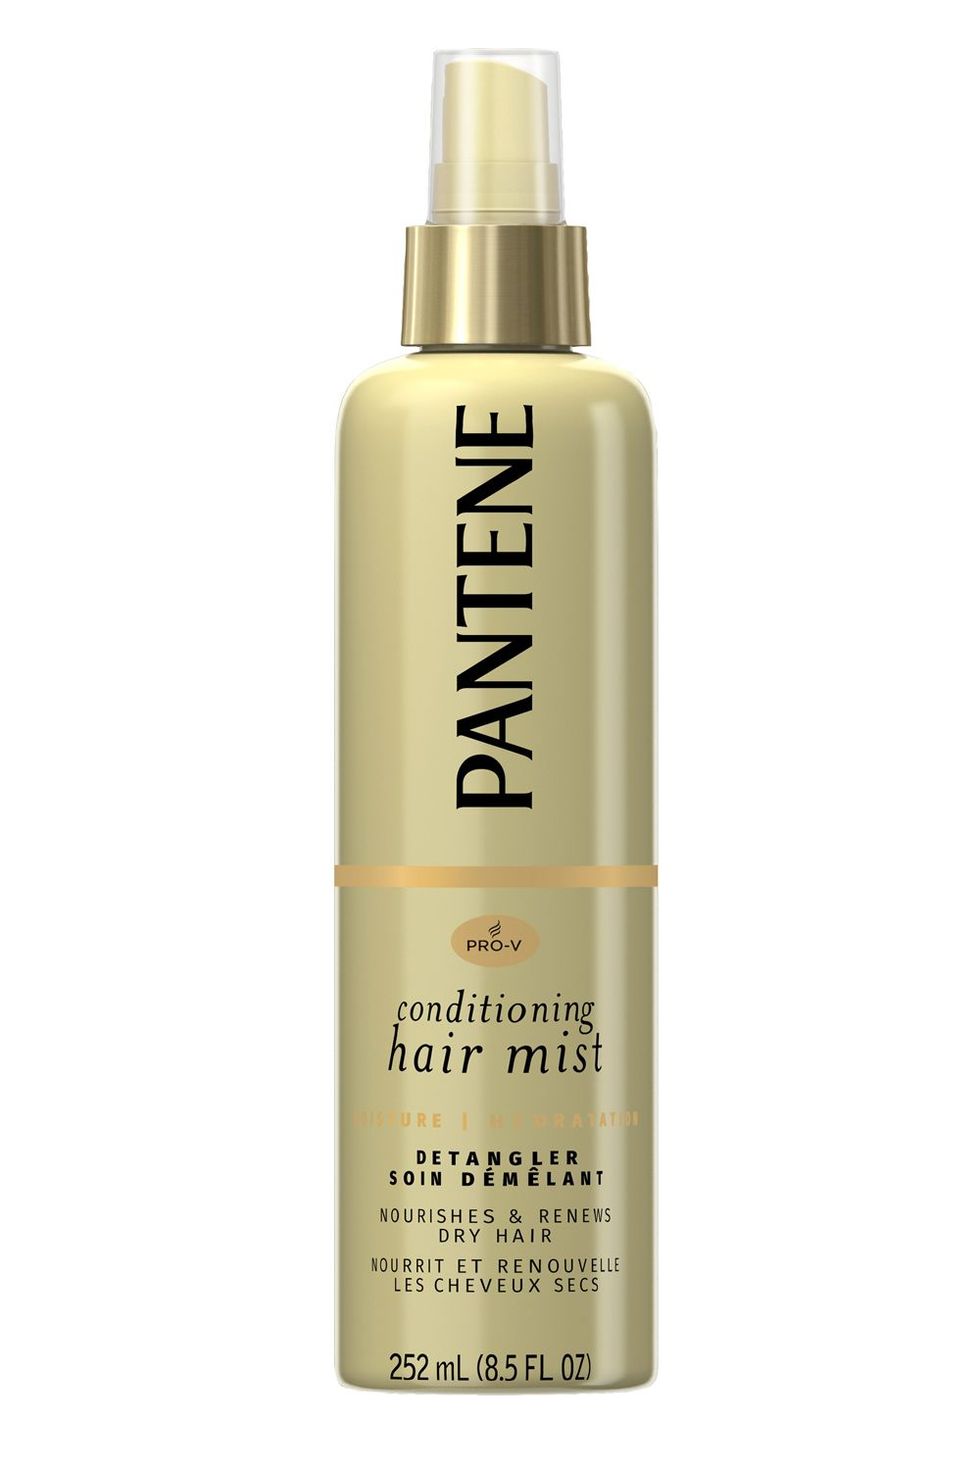 Pantene Pro-V Conditioning Hair Mist Detangler